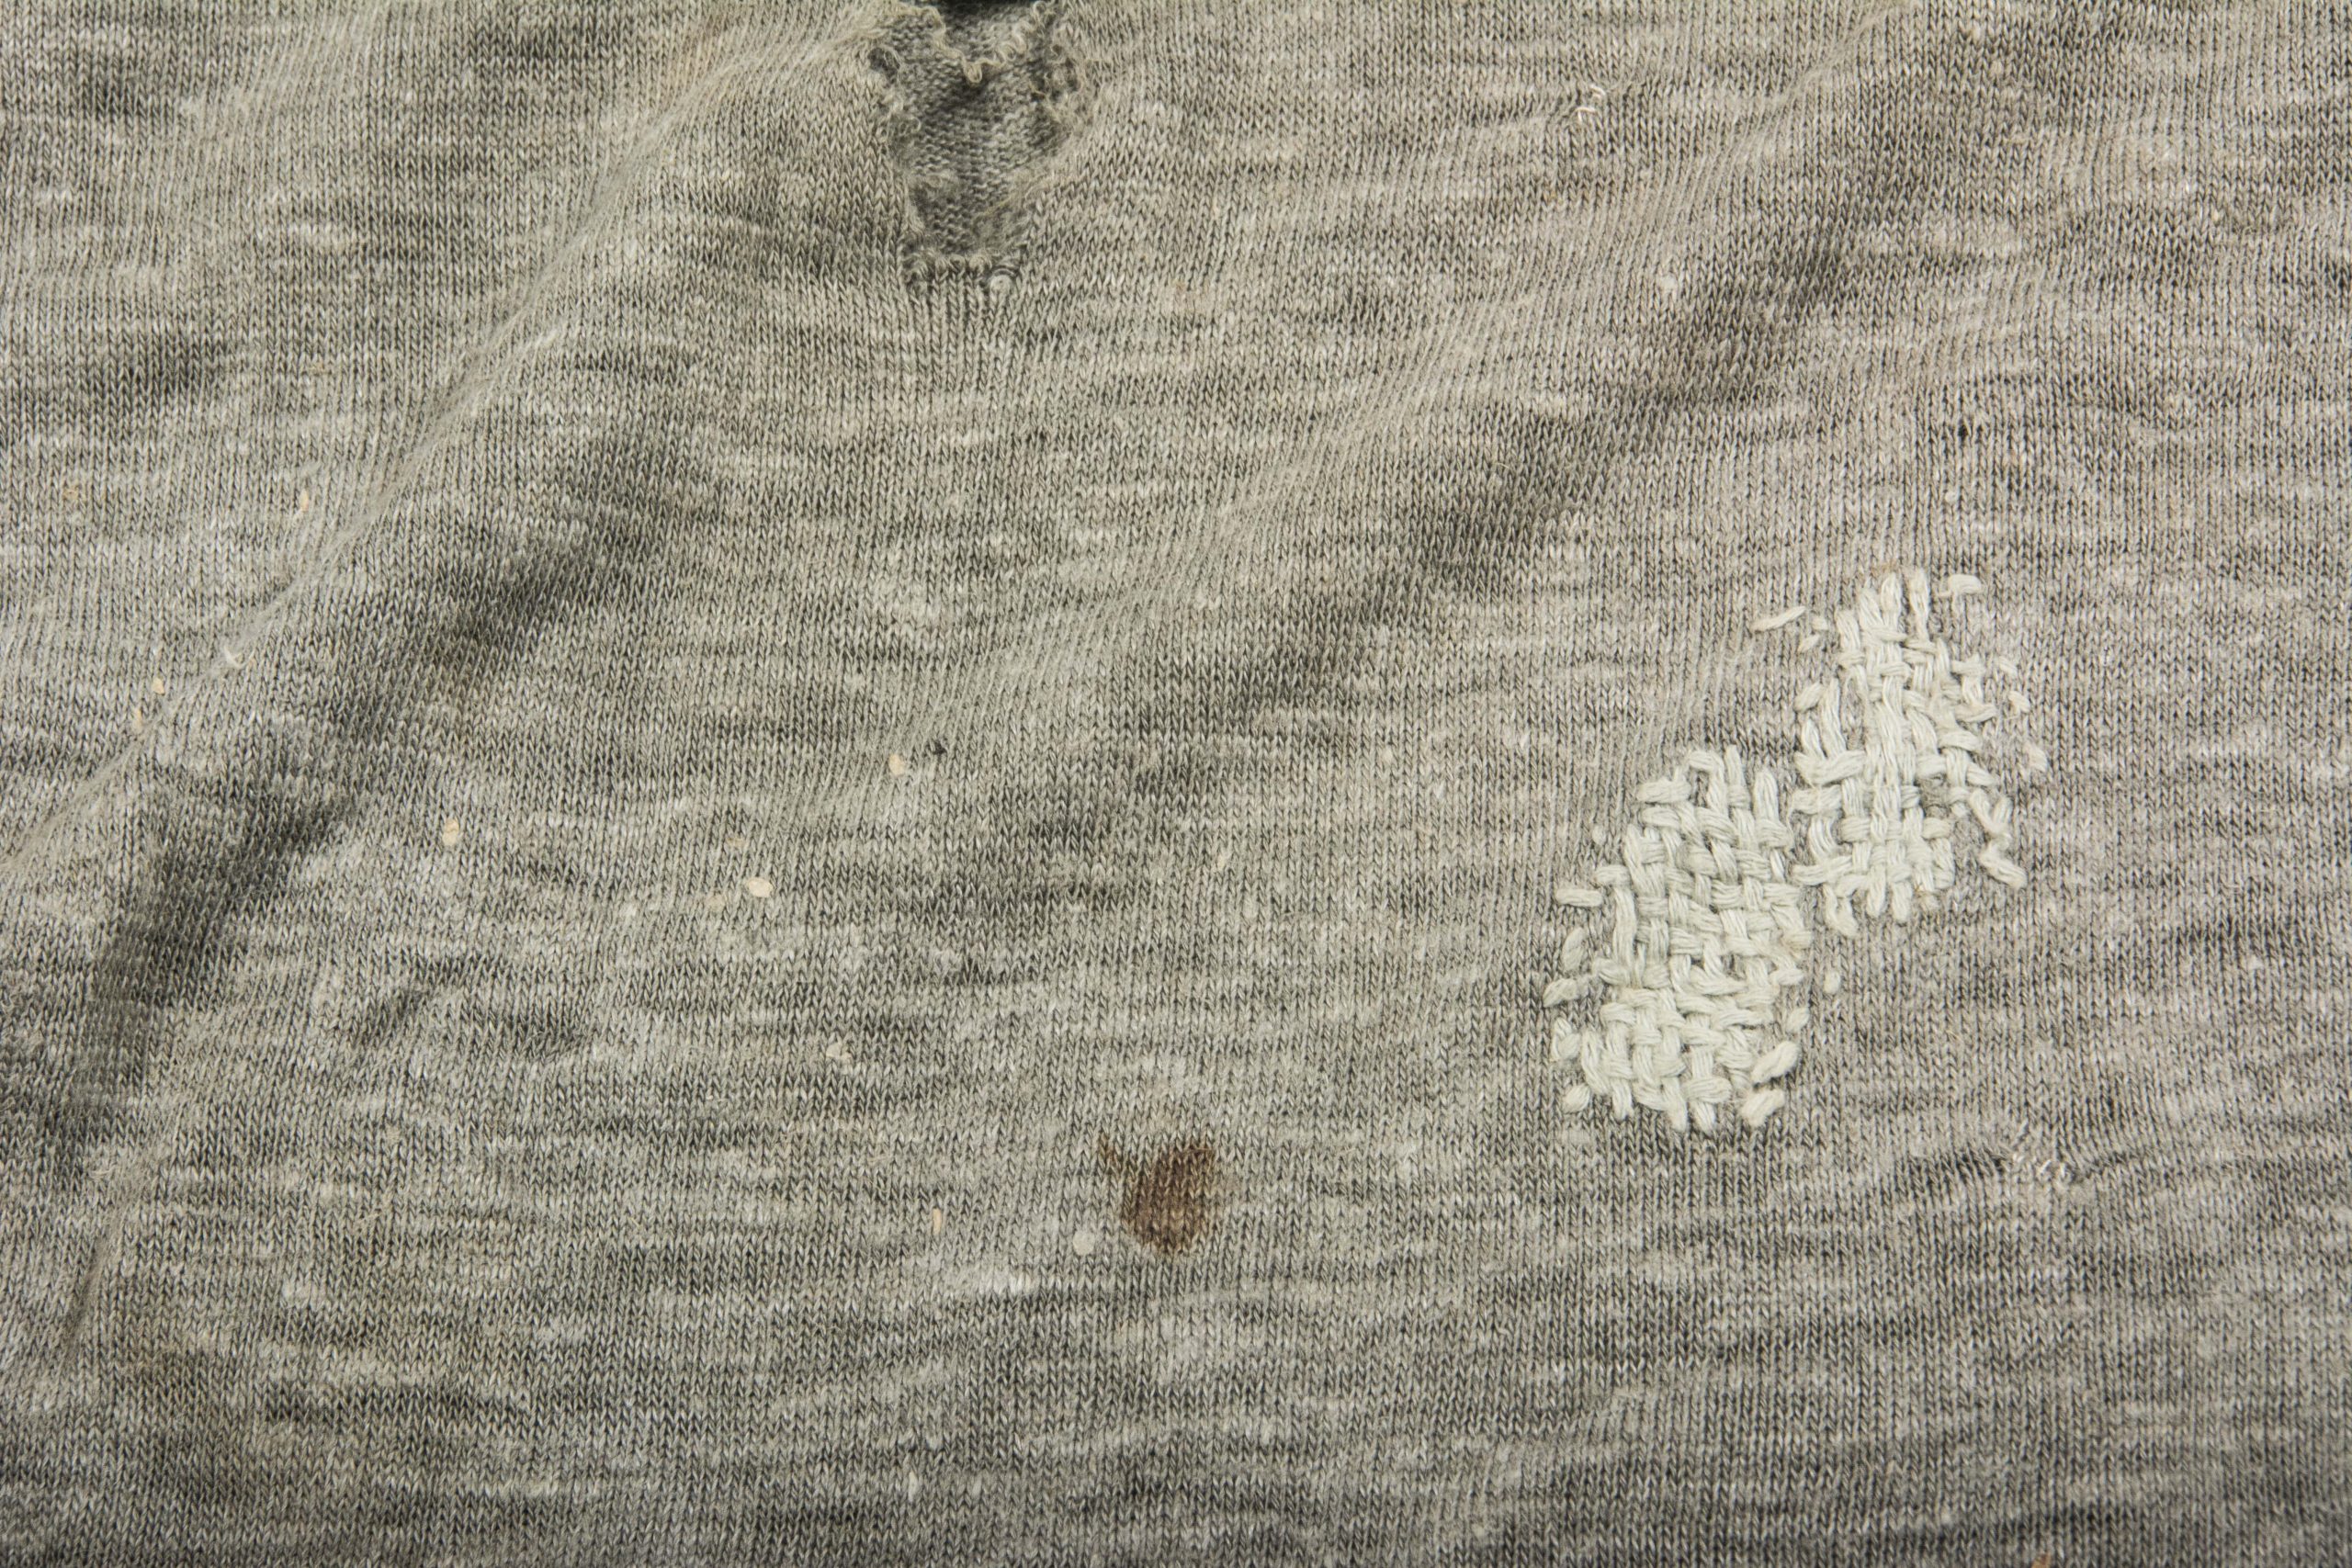 Issue Trikot undershirt in worn condition – fjm44